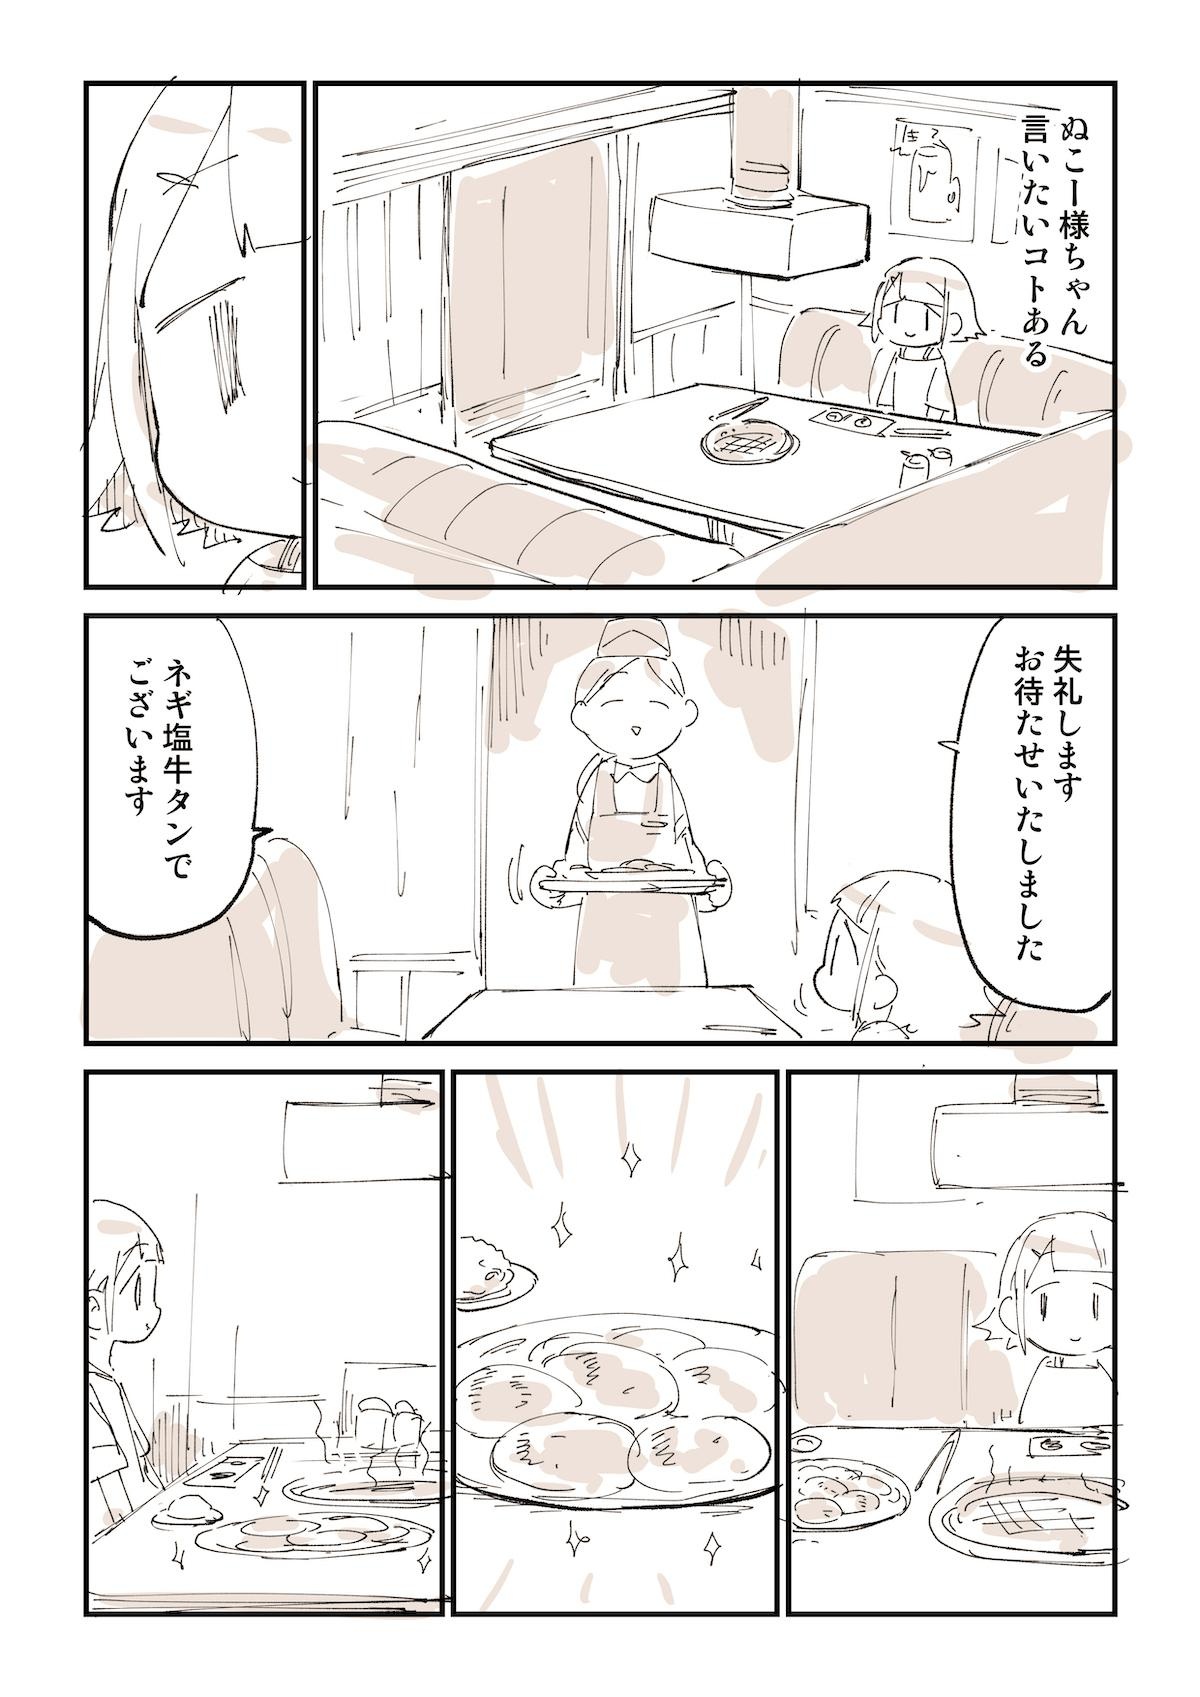 日本男児が絶対思ってること焼肉の話を漫画にしました_01